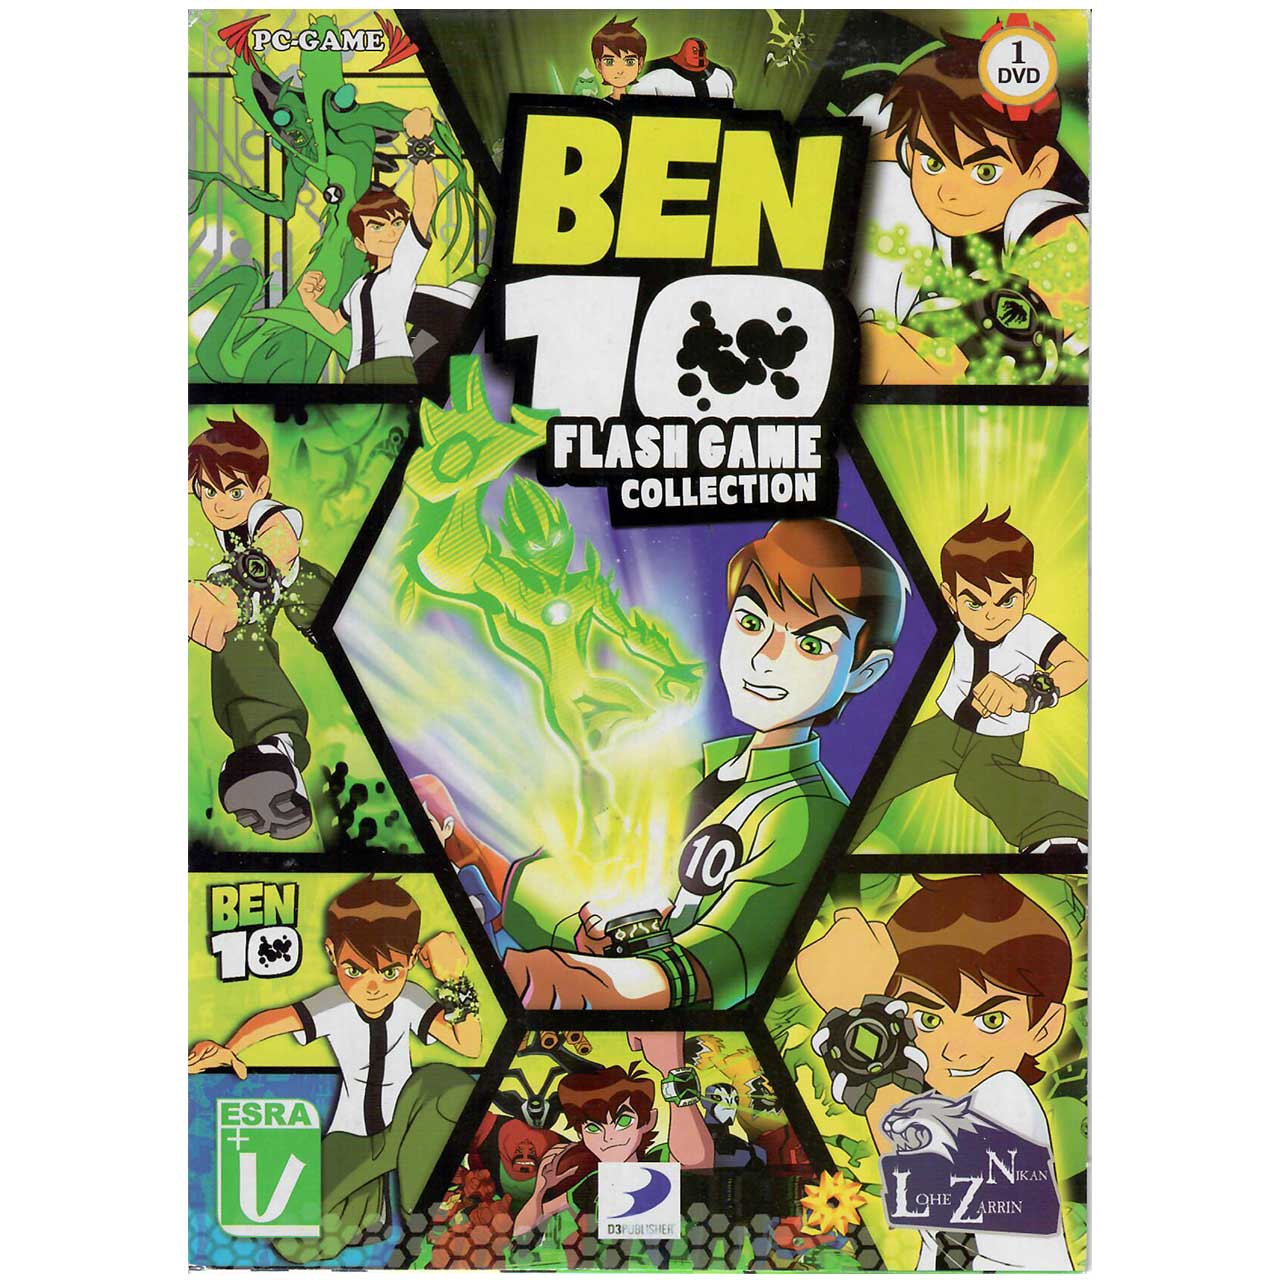 بازی کامپیوتری Ben 10 Flash Game Collection  مخصوص PC